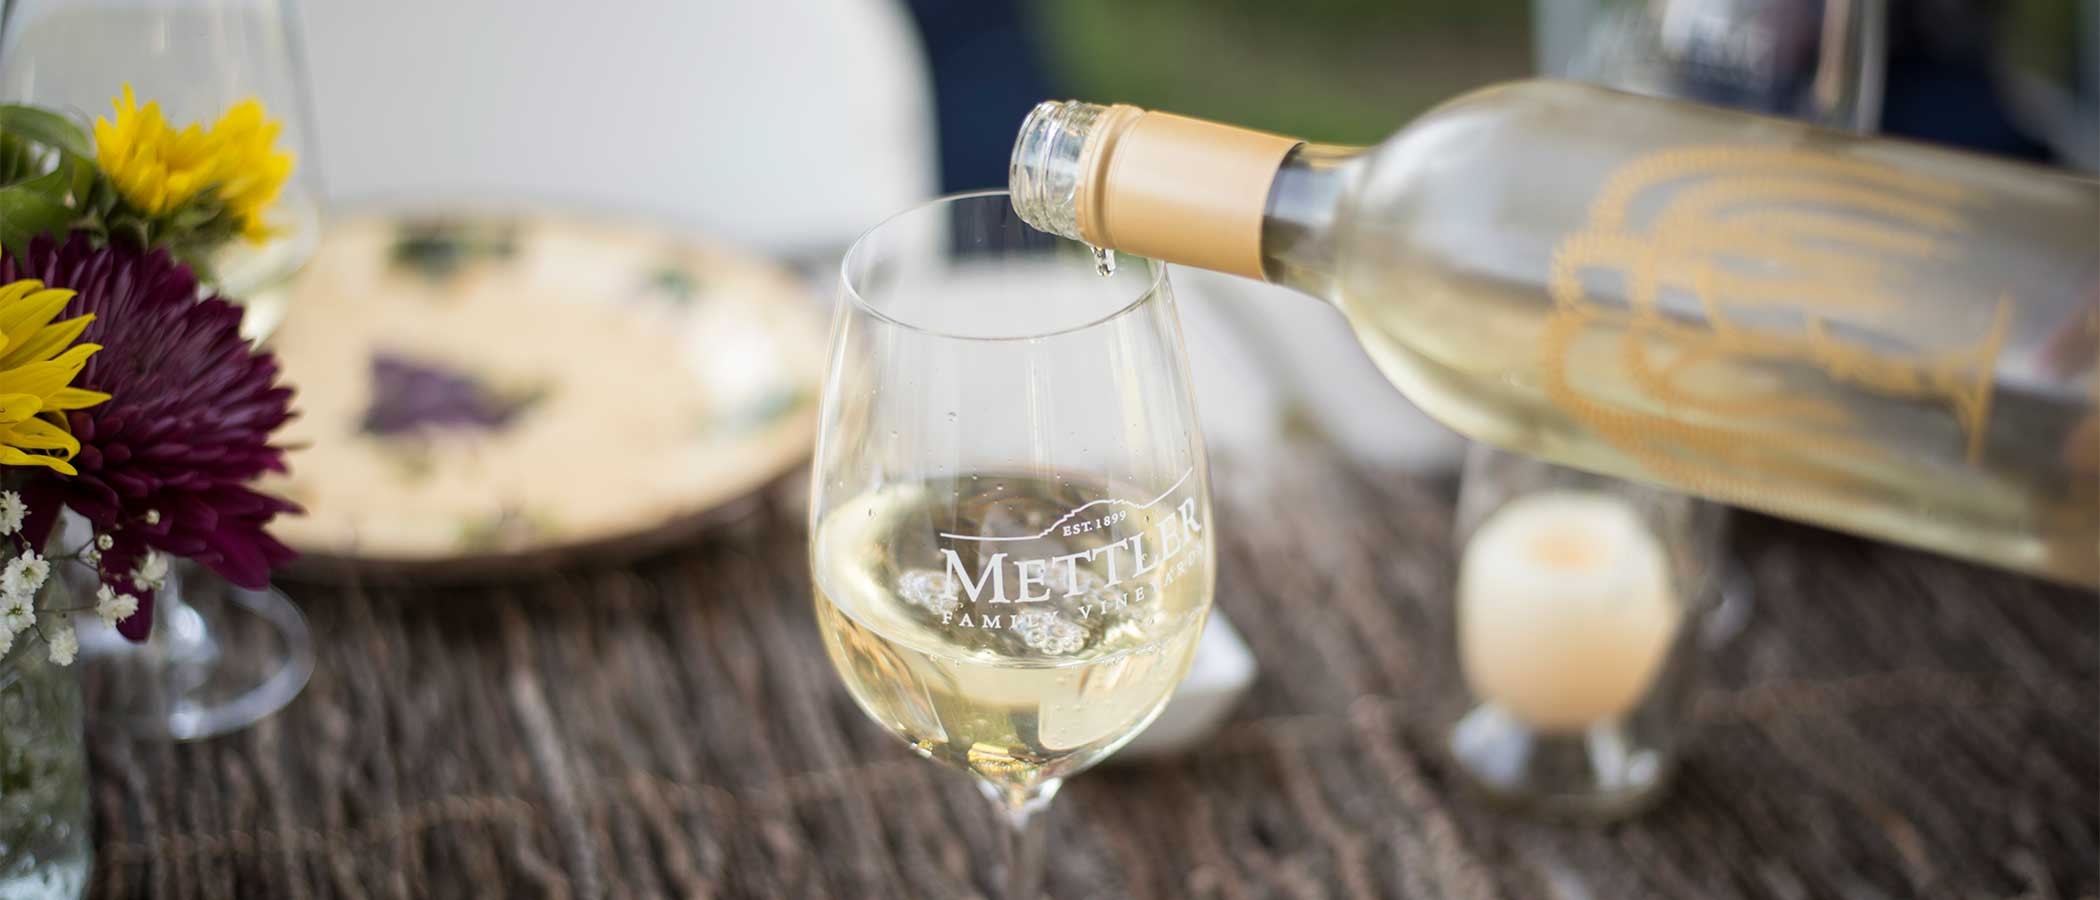 Mettler white wine